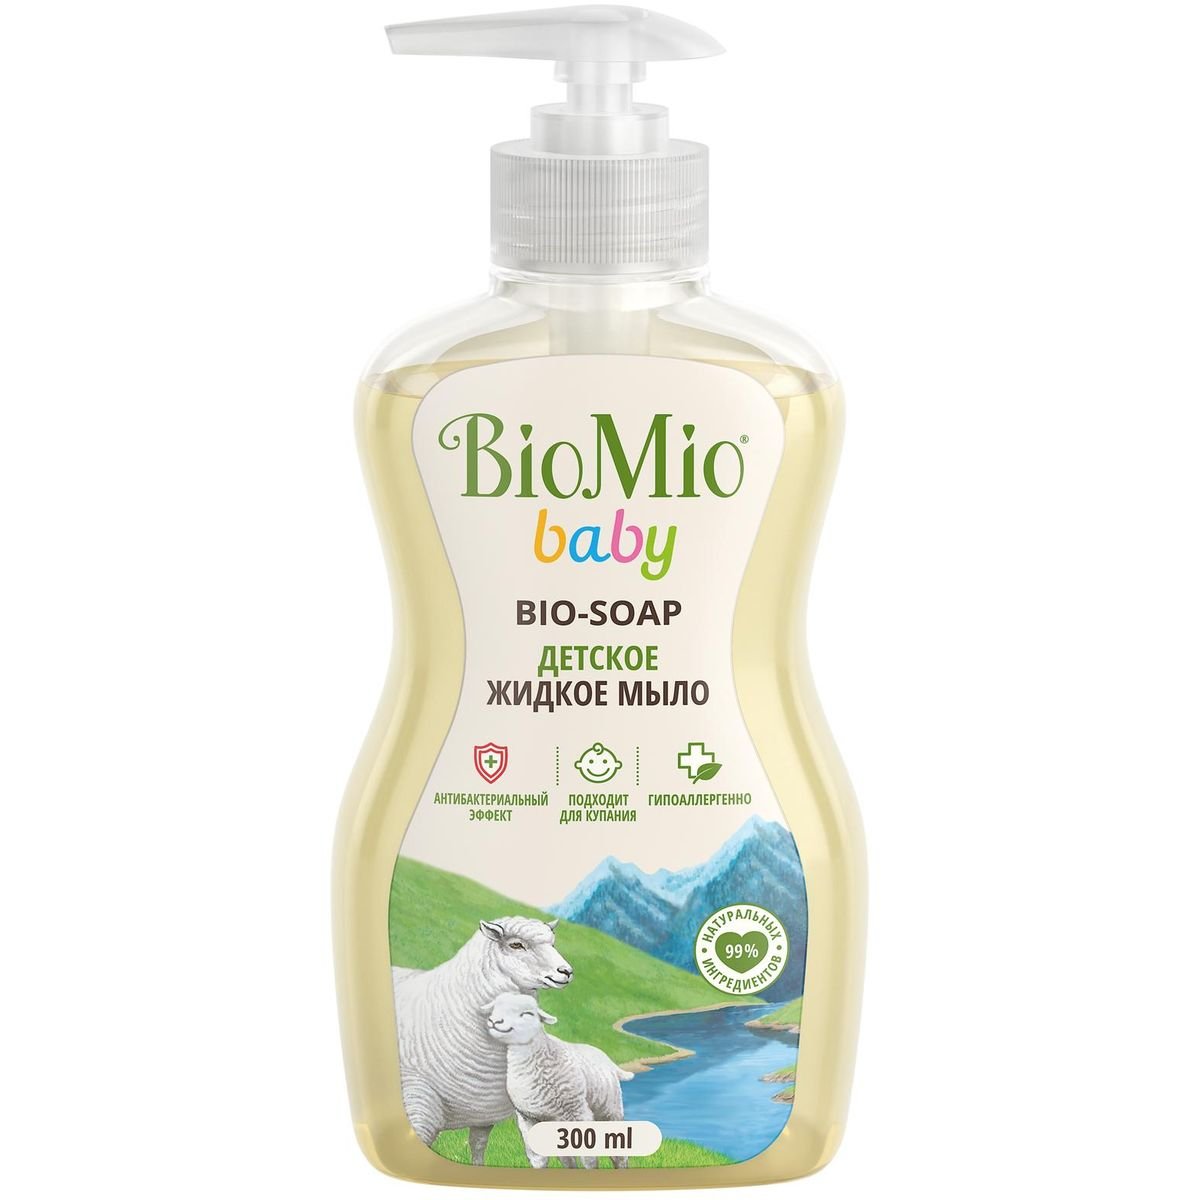 BioMio BABY Bio-Soap Детское жидкое мыло, гипоаллергенное, 300 мл